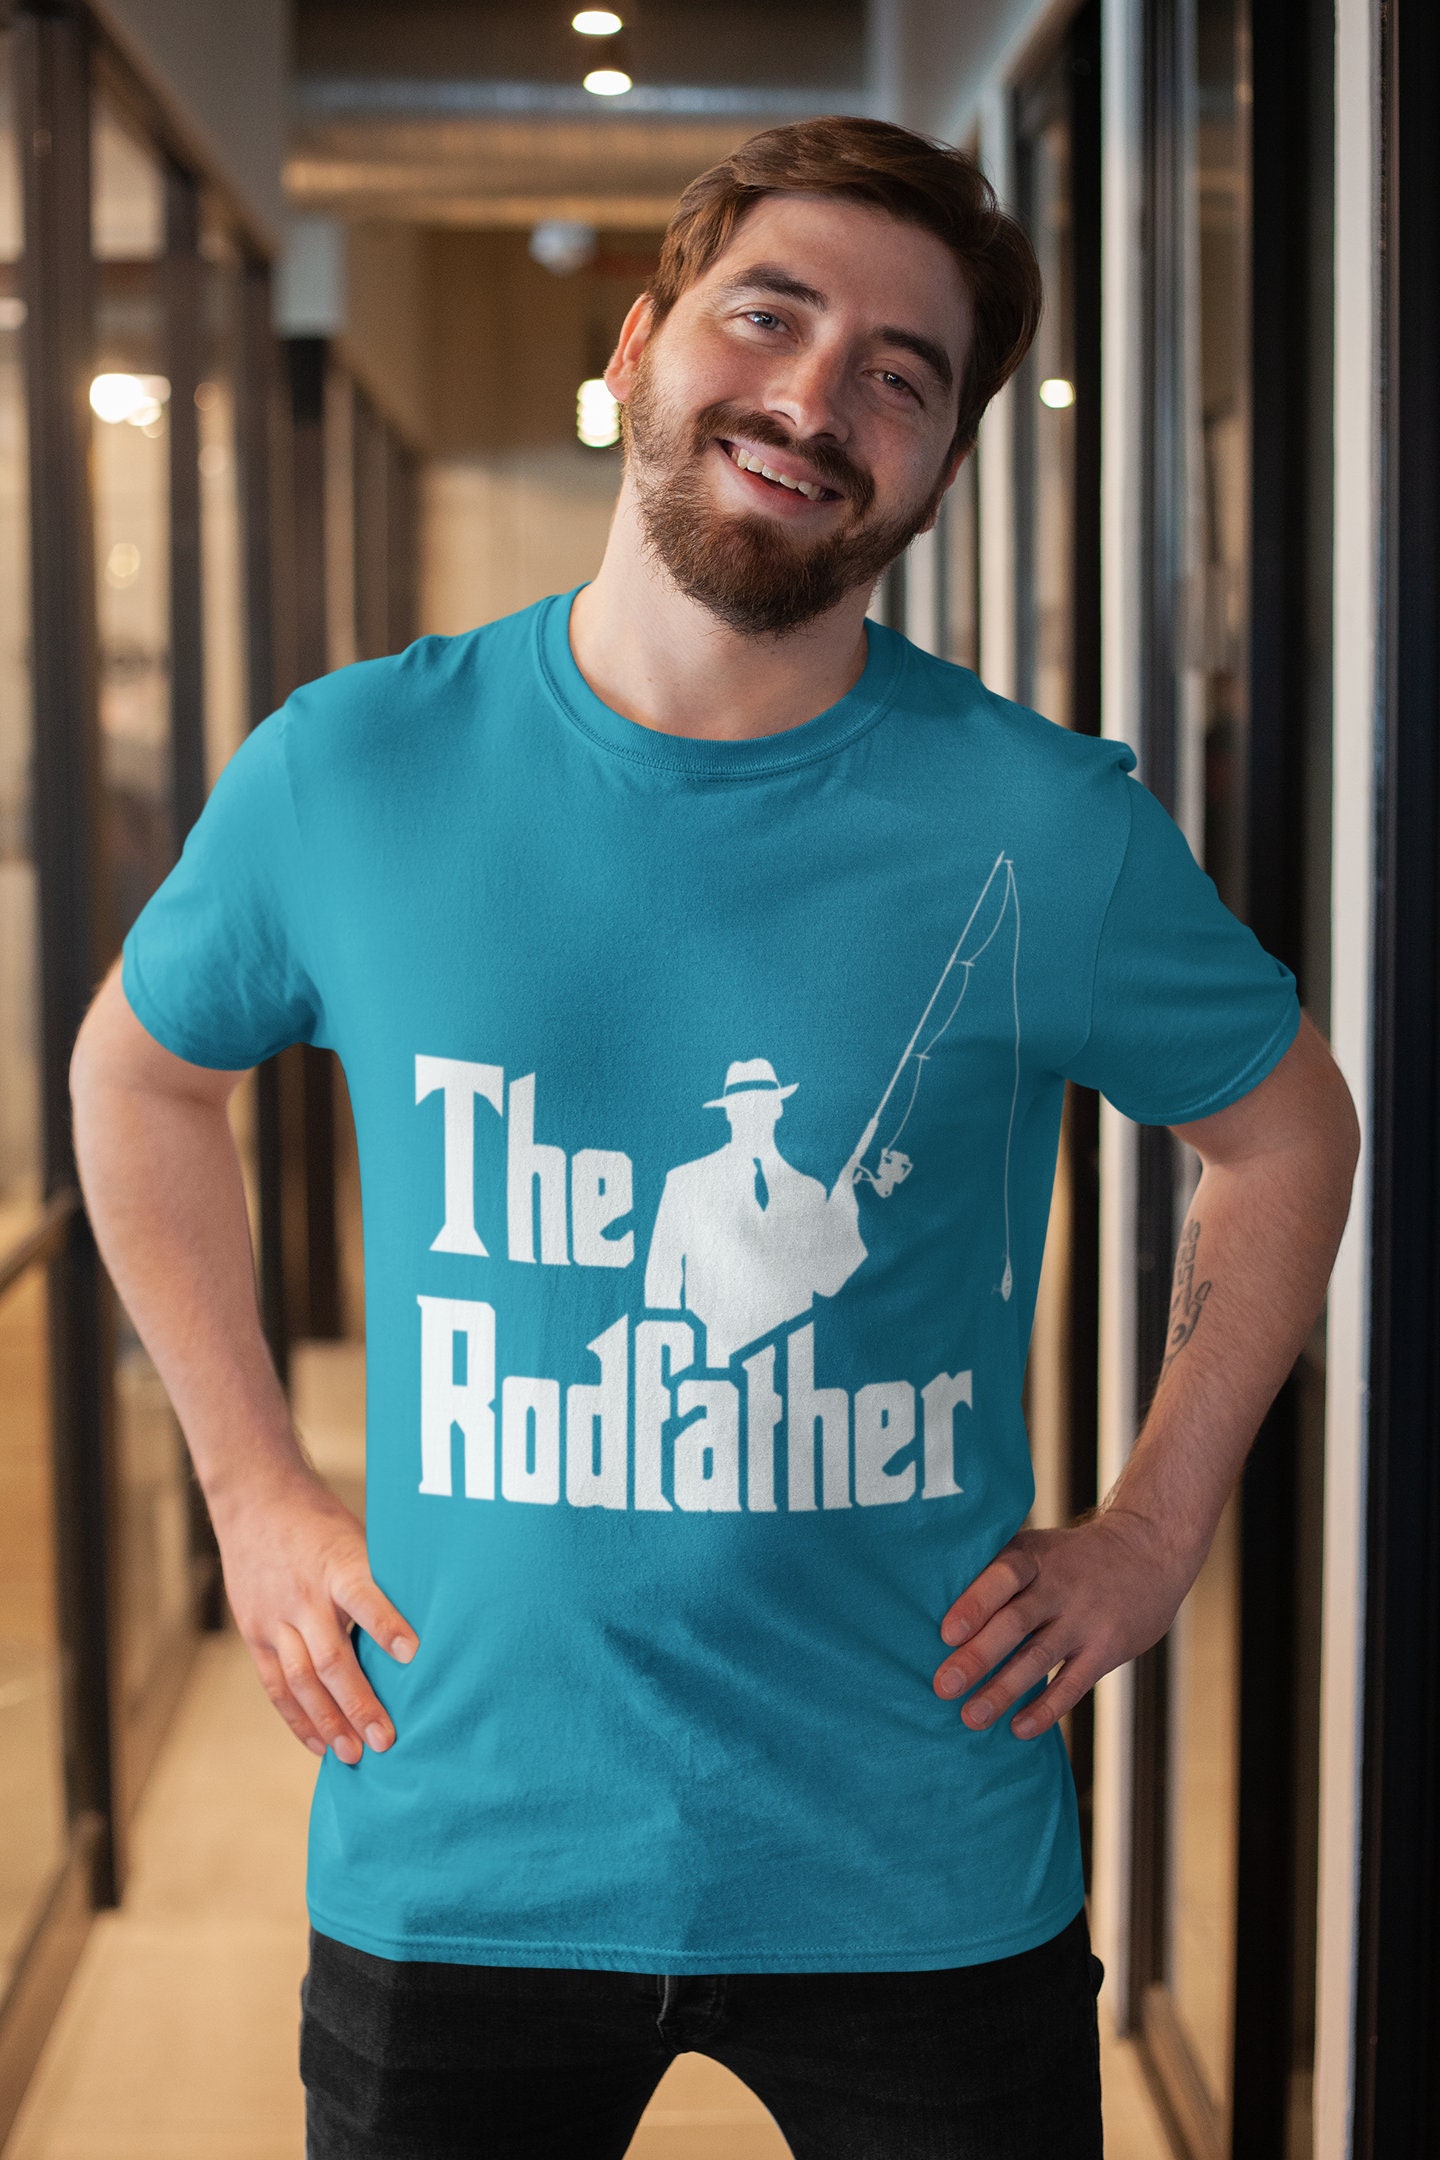 The Rodfather Shirt - Fishing T Shirt - Fisherman Shirt - Funny Fishing Shirt - Fishing Gifts - Vintage Fishing T Shirt - Father's day